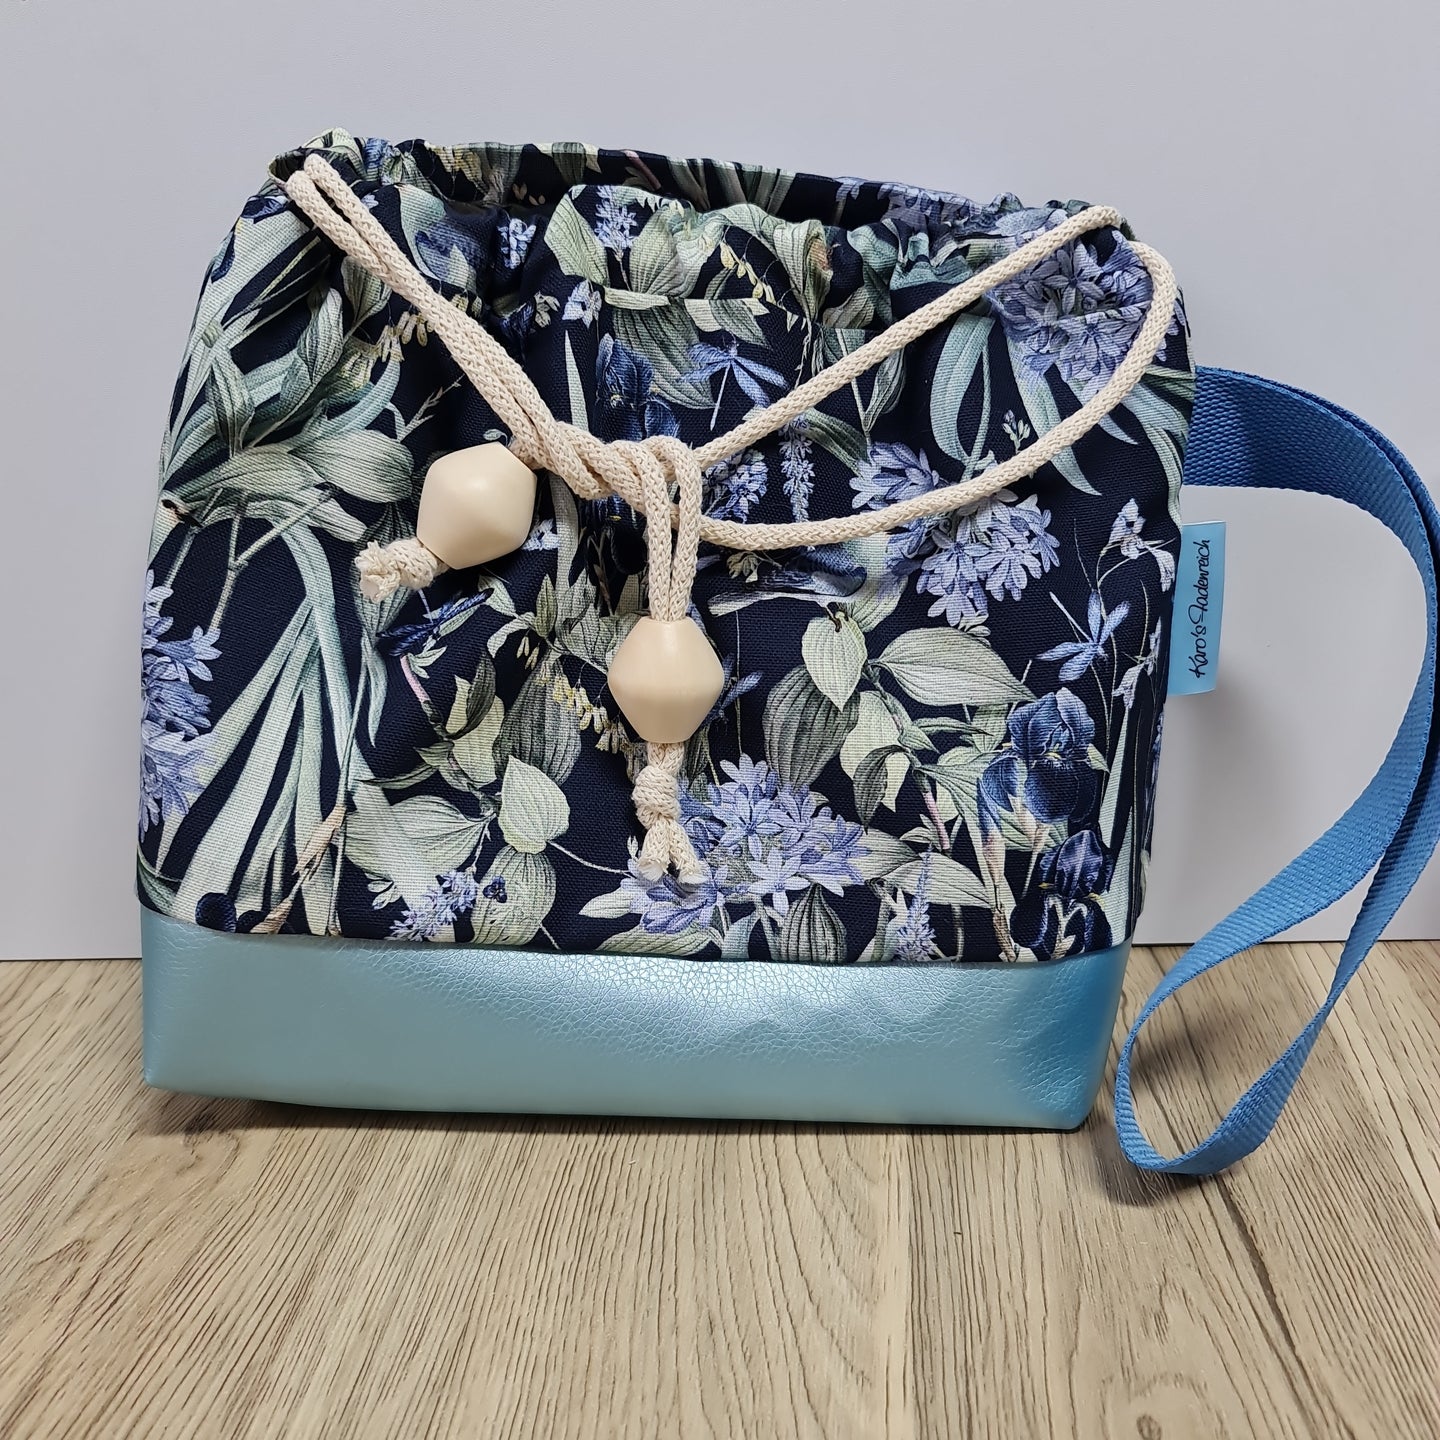 Kleine Karo- Bag, mit viel Liebe handgenäht, Modell Botanik